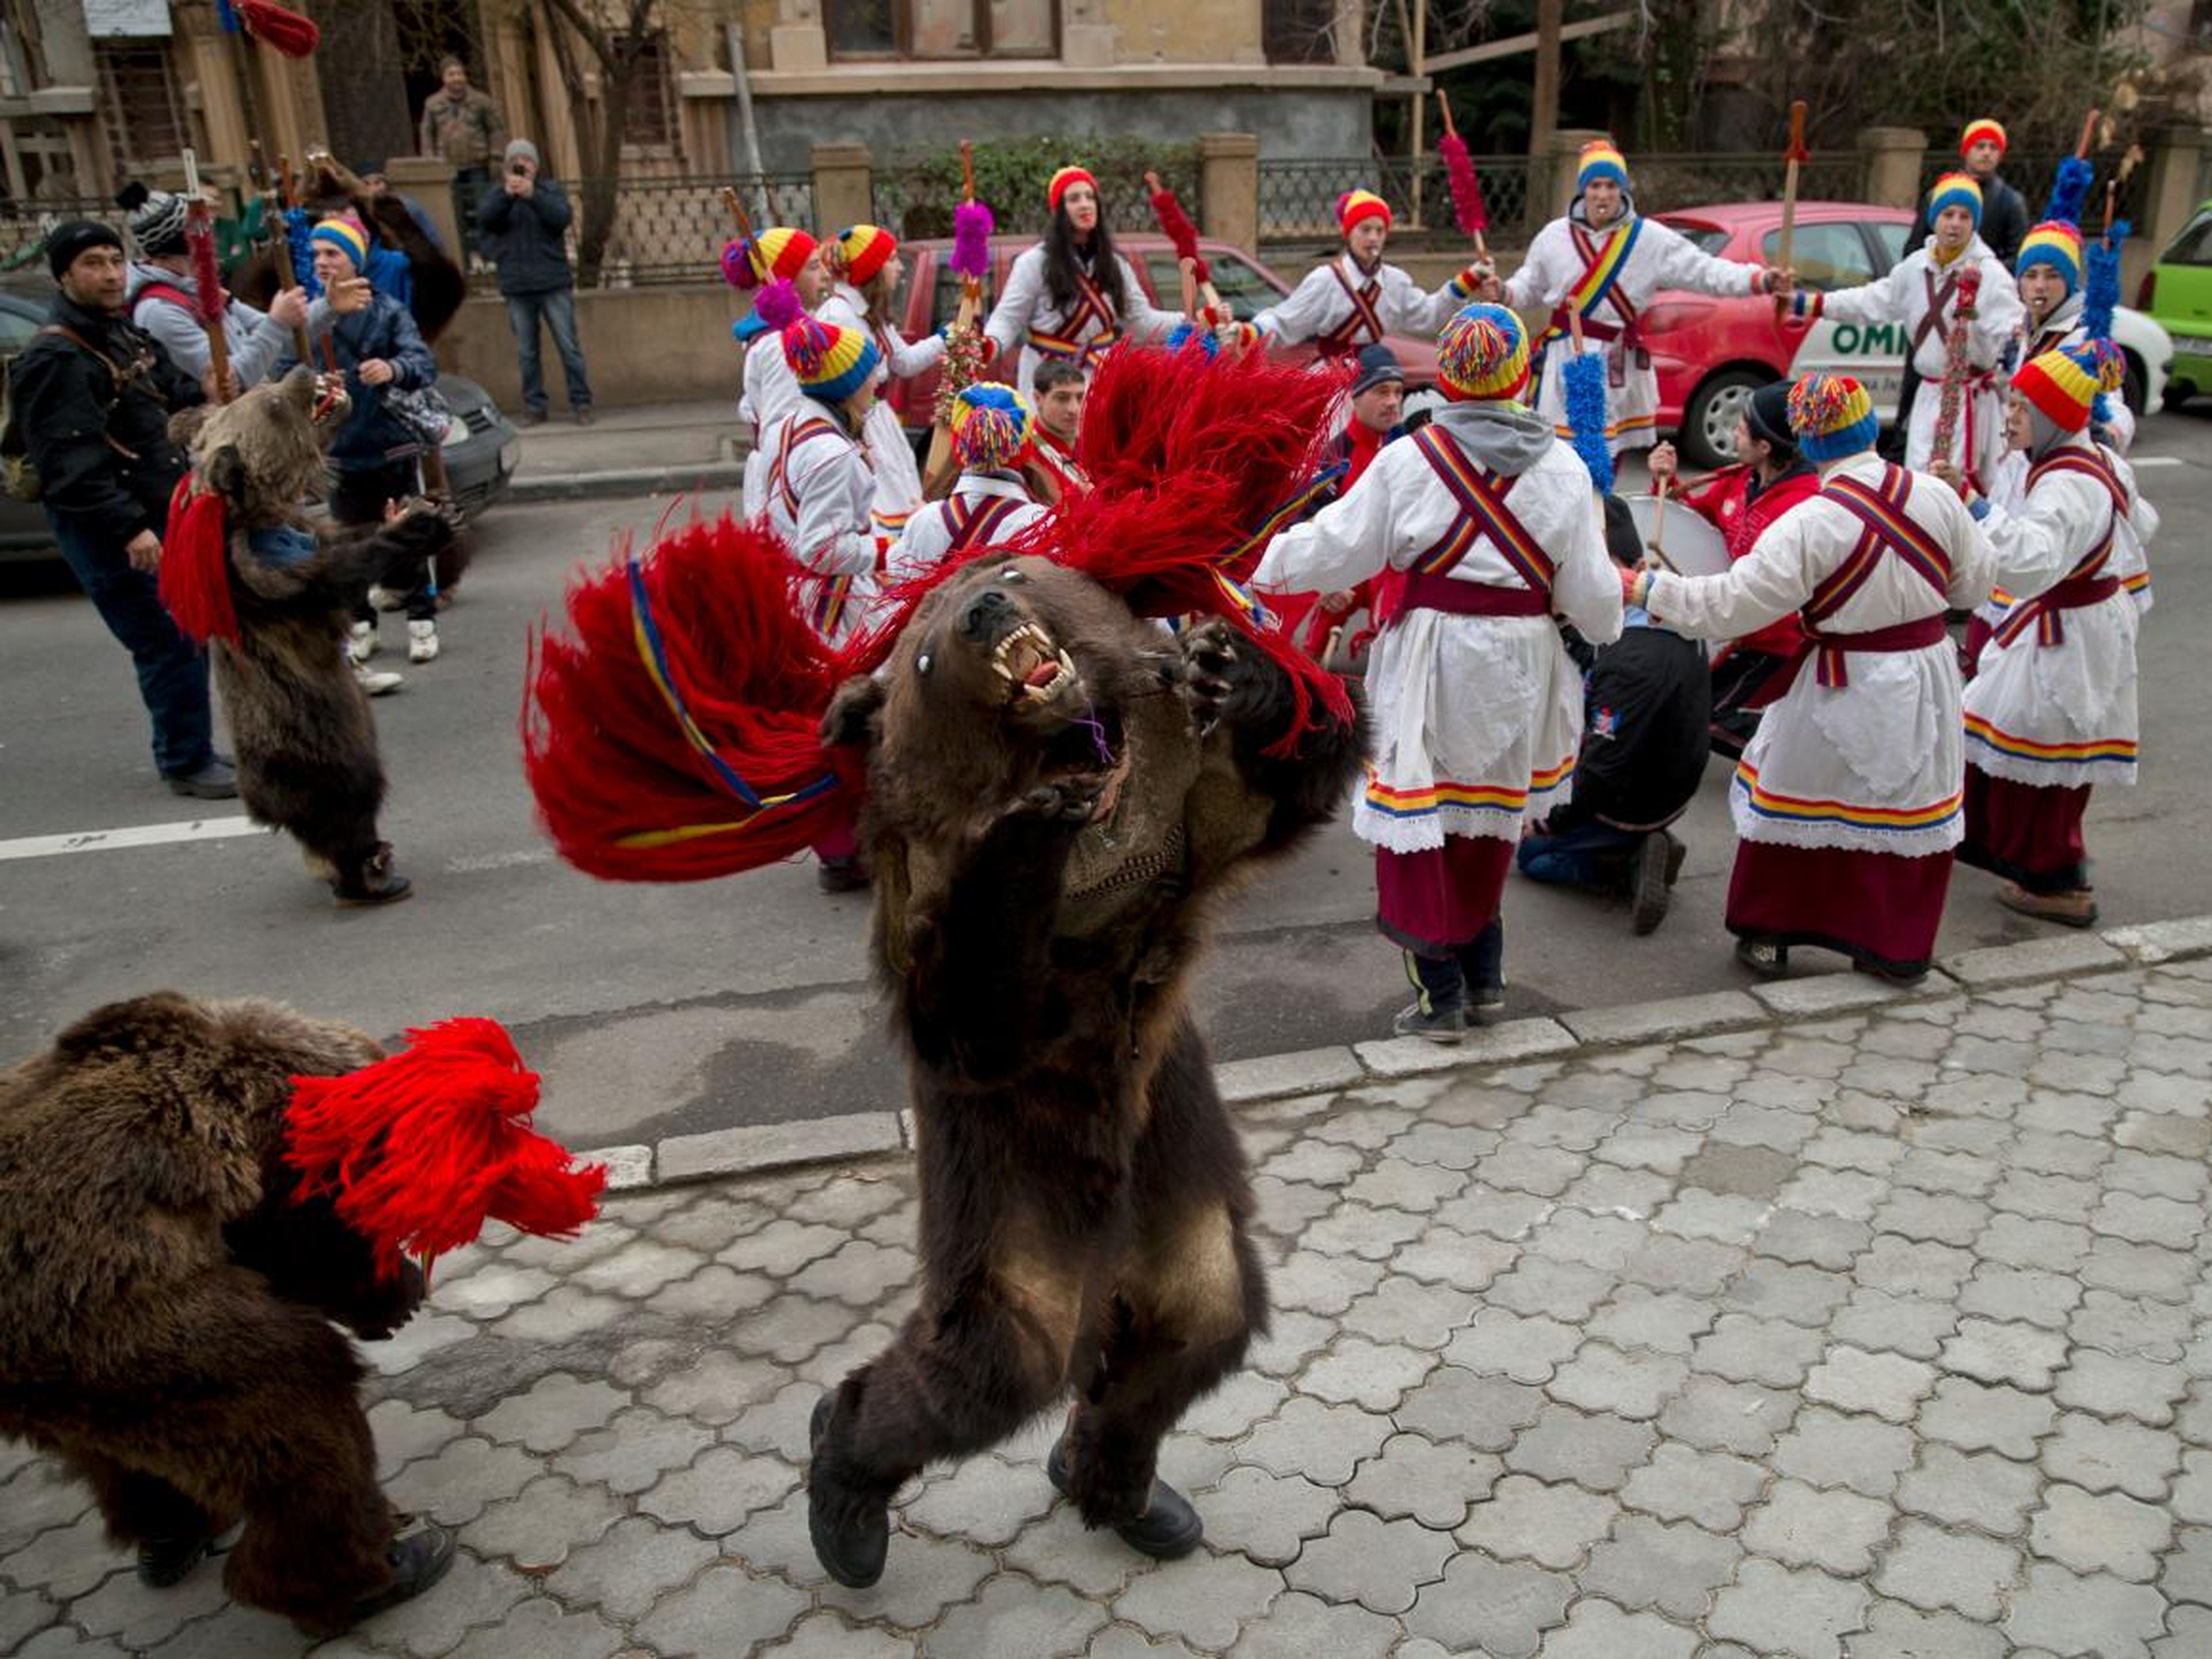 Rumanía celebra la tradición de cantar villancicos con otras costumbres pre-románicas locales.